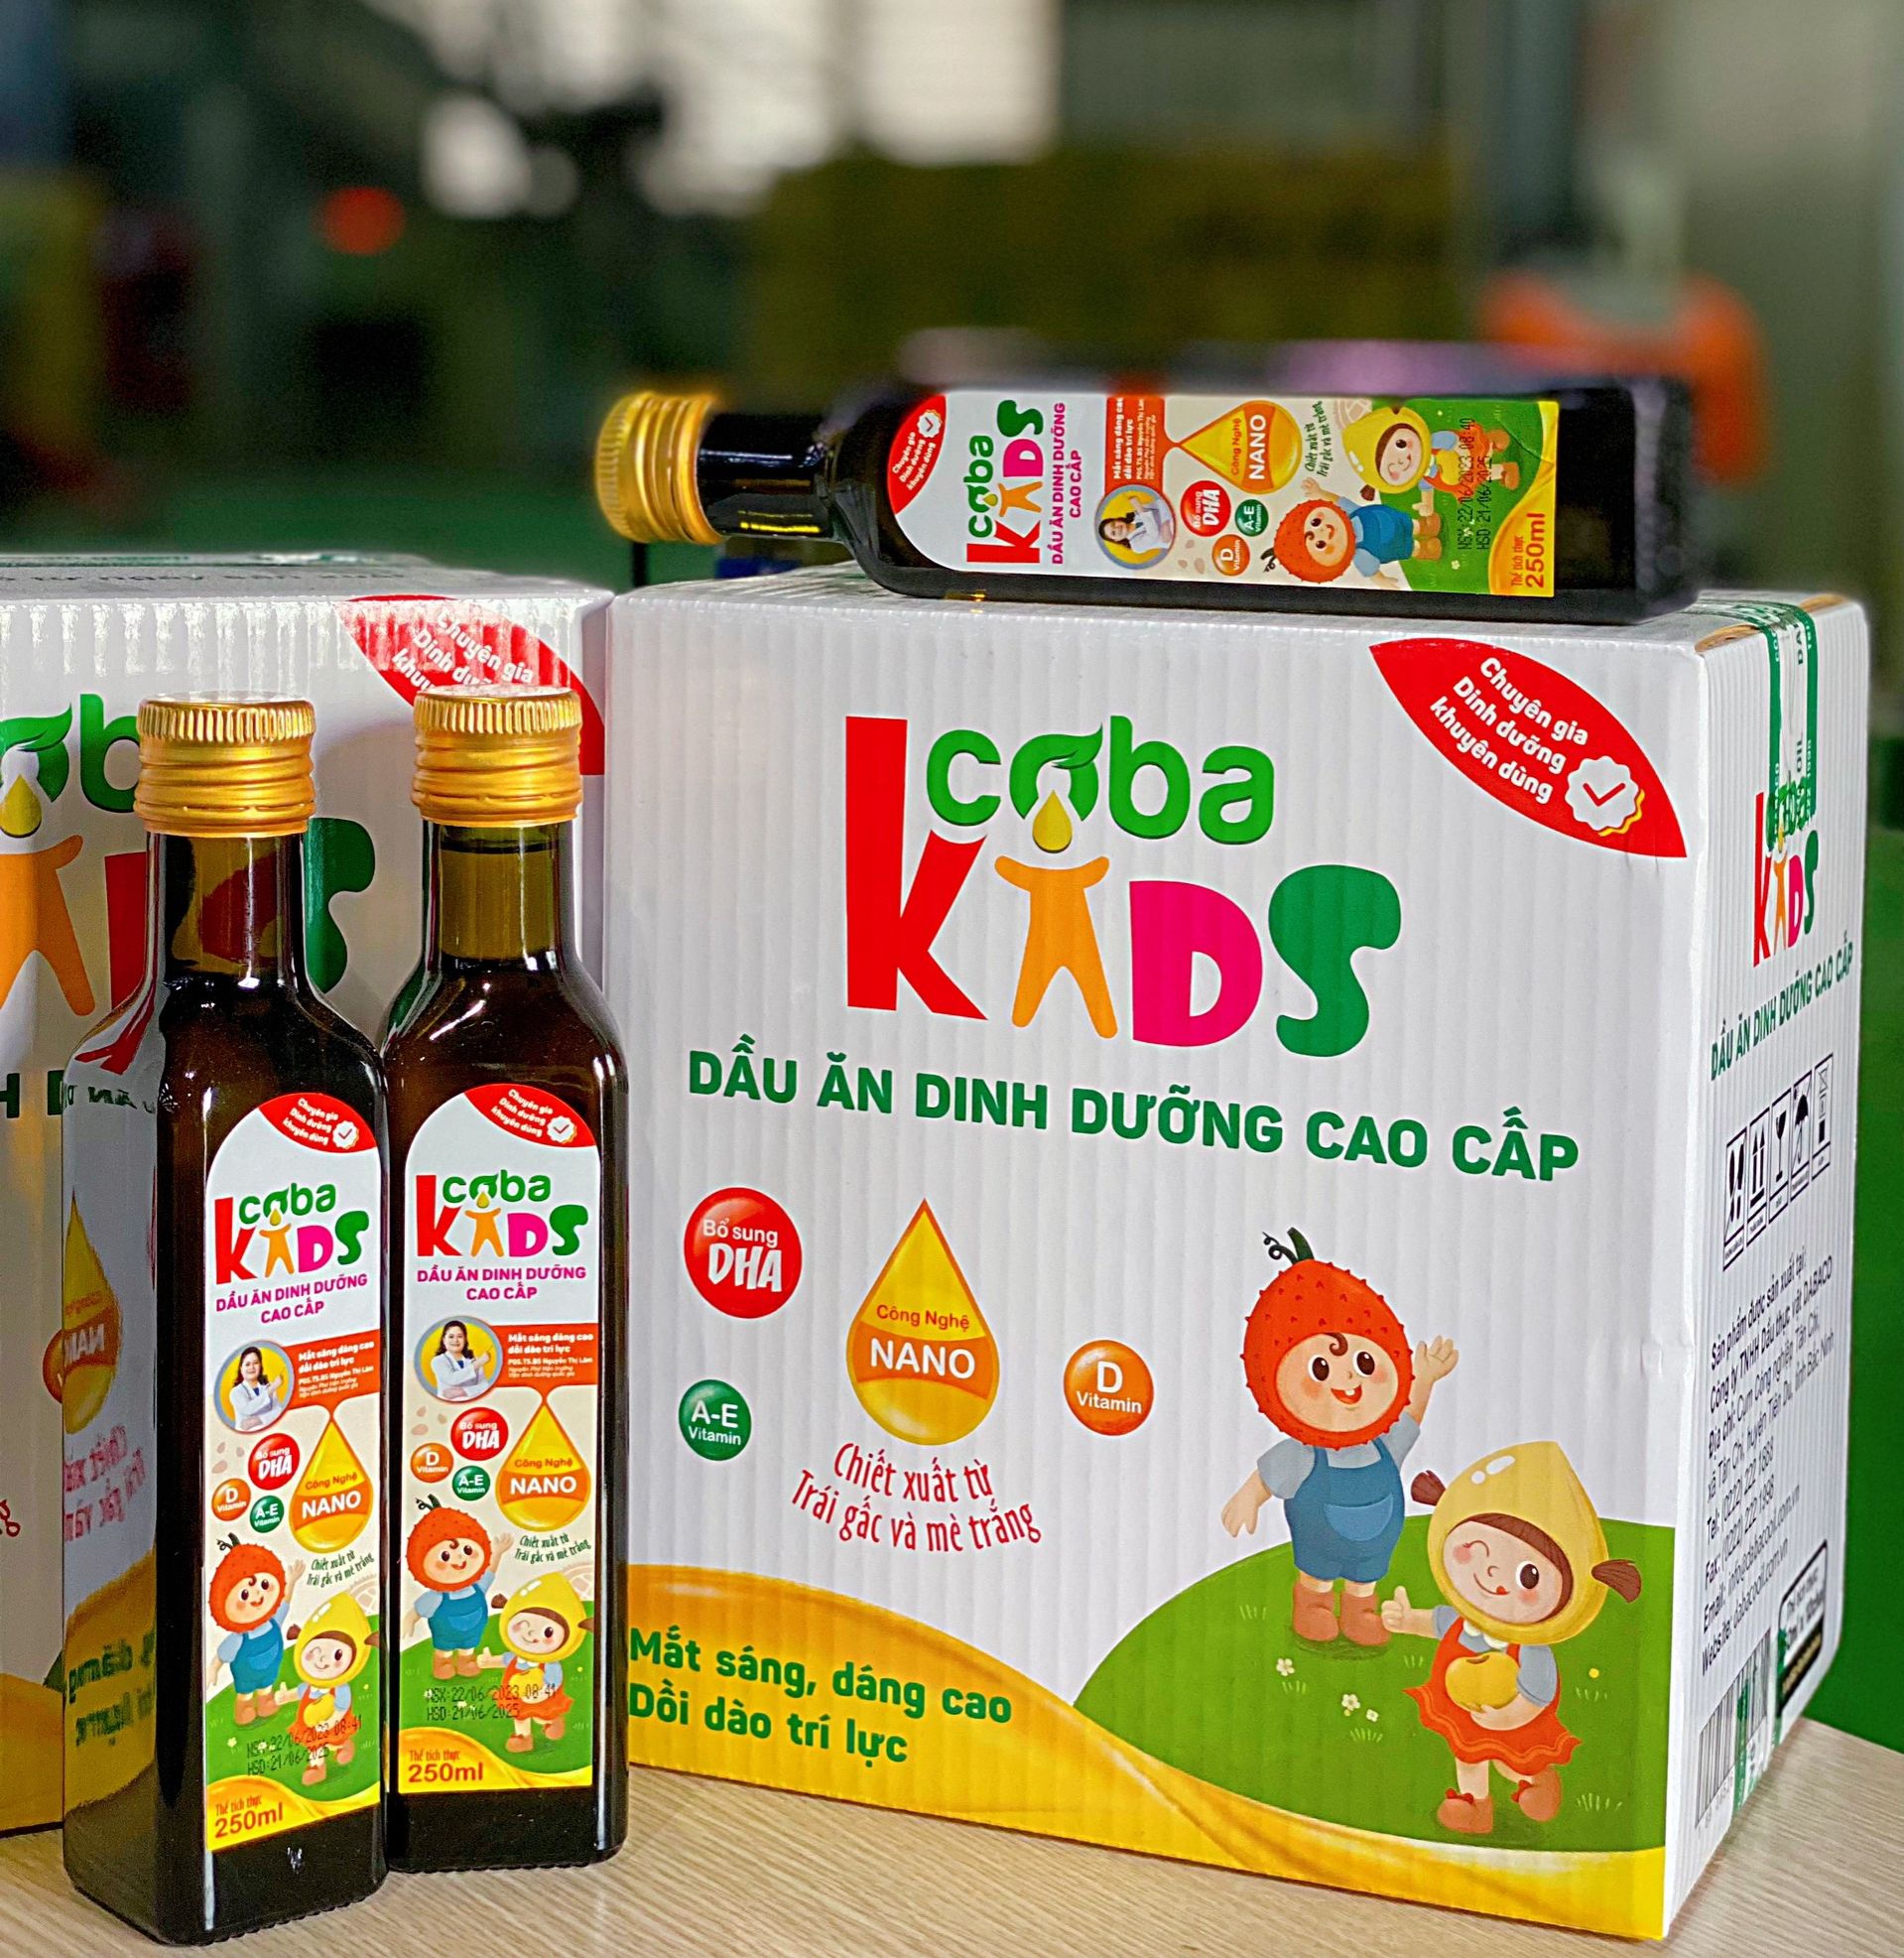 GIẢM 30% Combo 2 chai Dầu ăn dinh dưỡng cao cấp dành cho trẻ em CobaKids